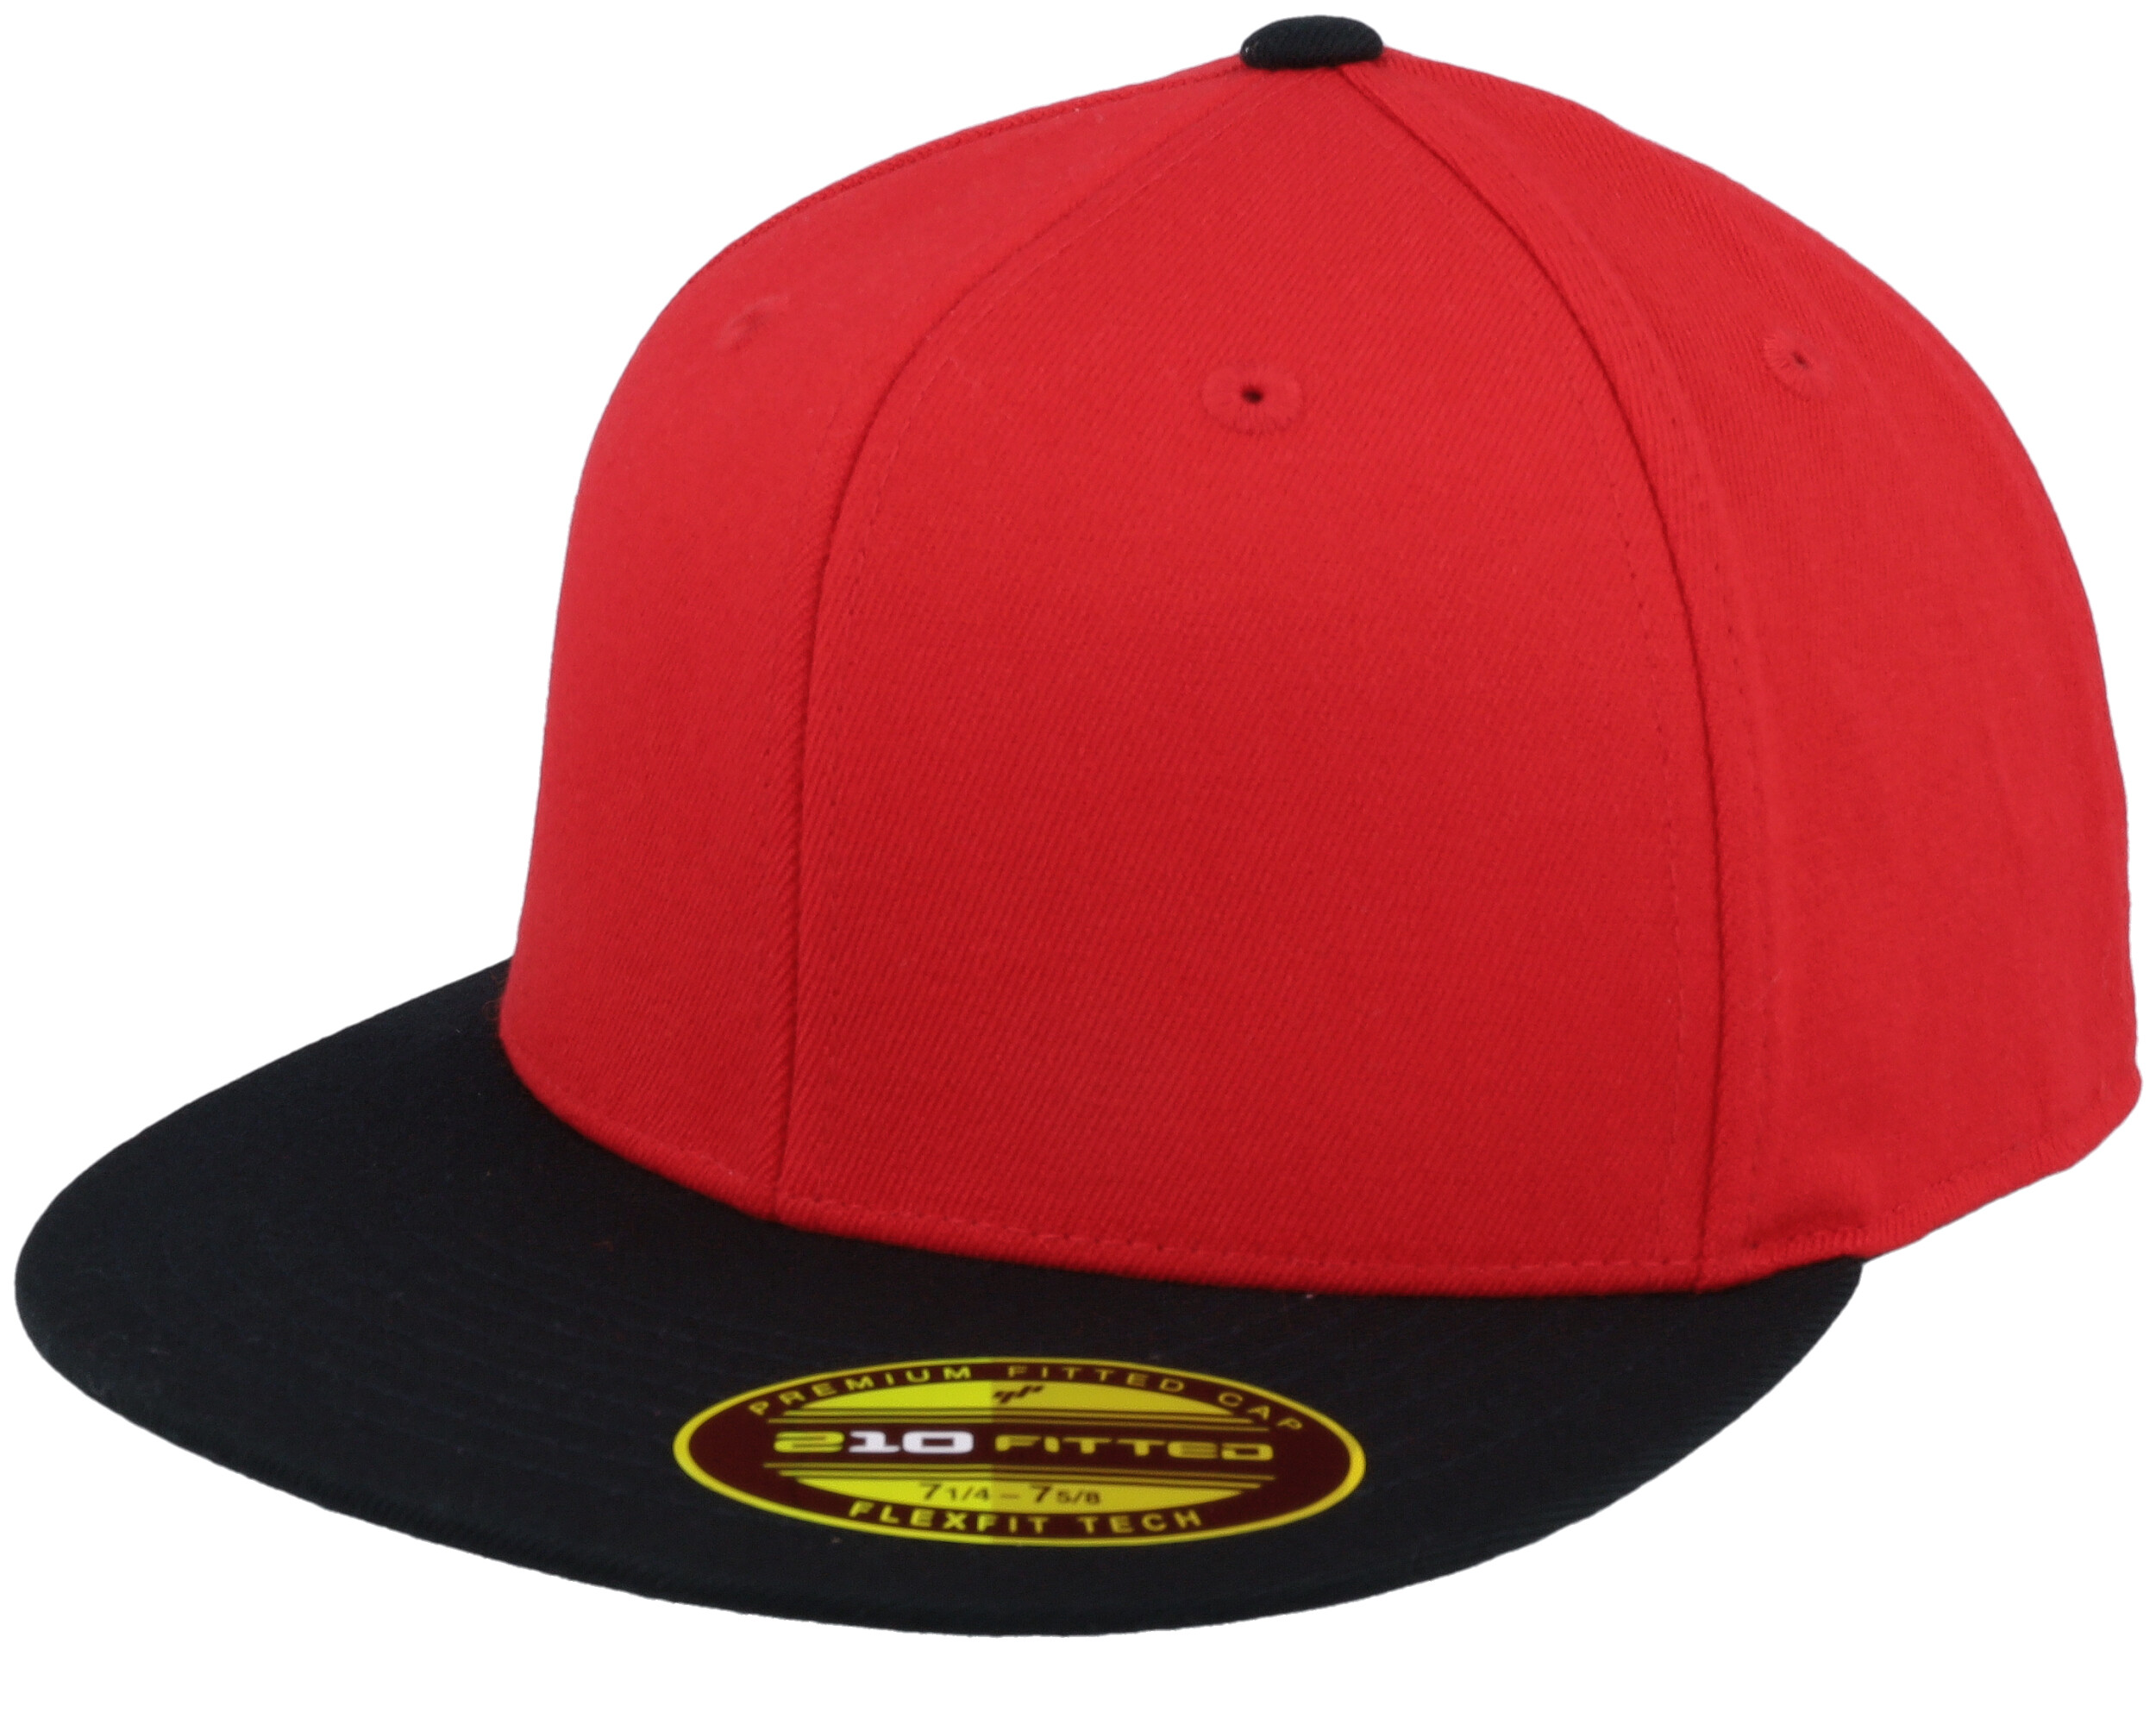 Premium 210 2-Tone Red/Black Fitted cap Flexfit 